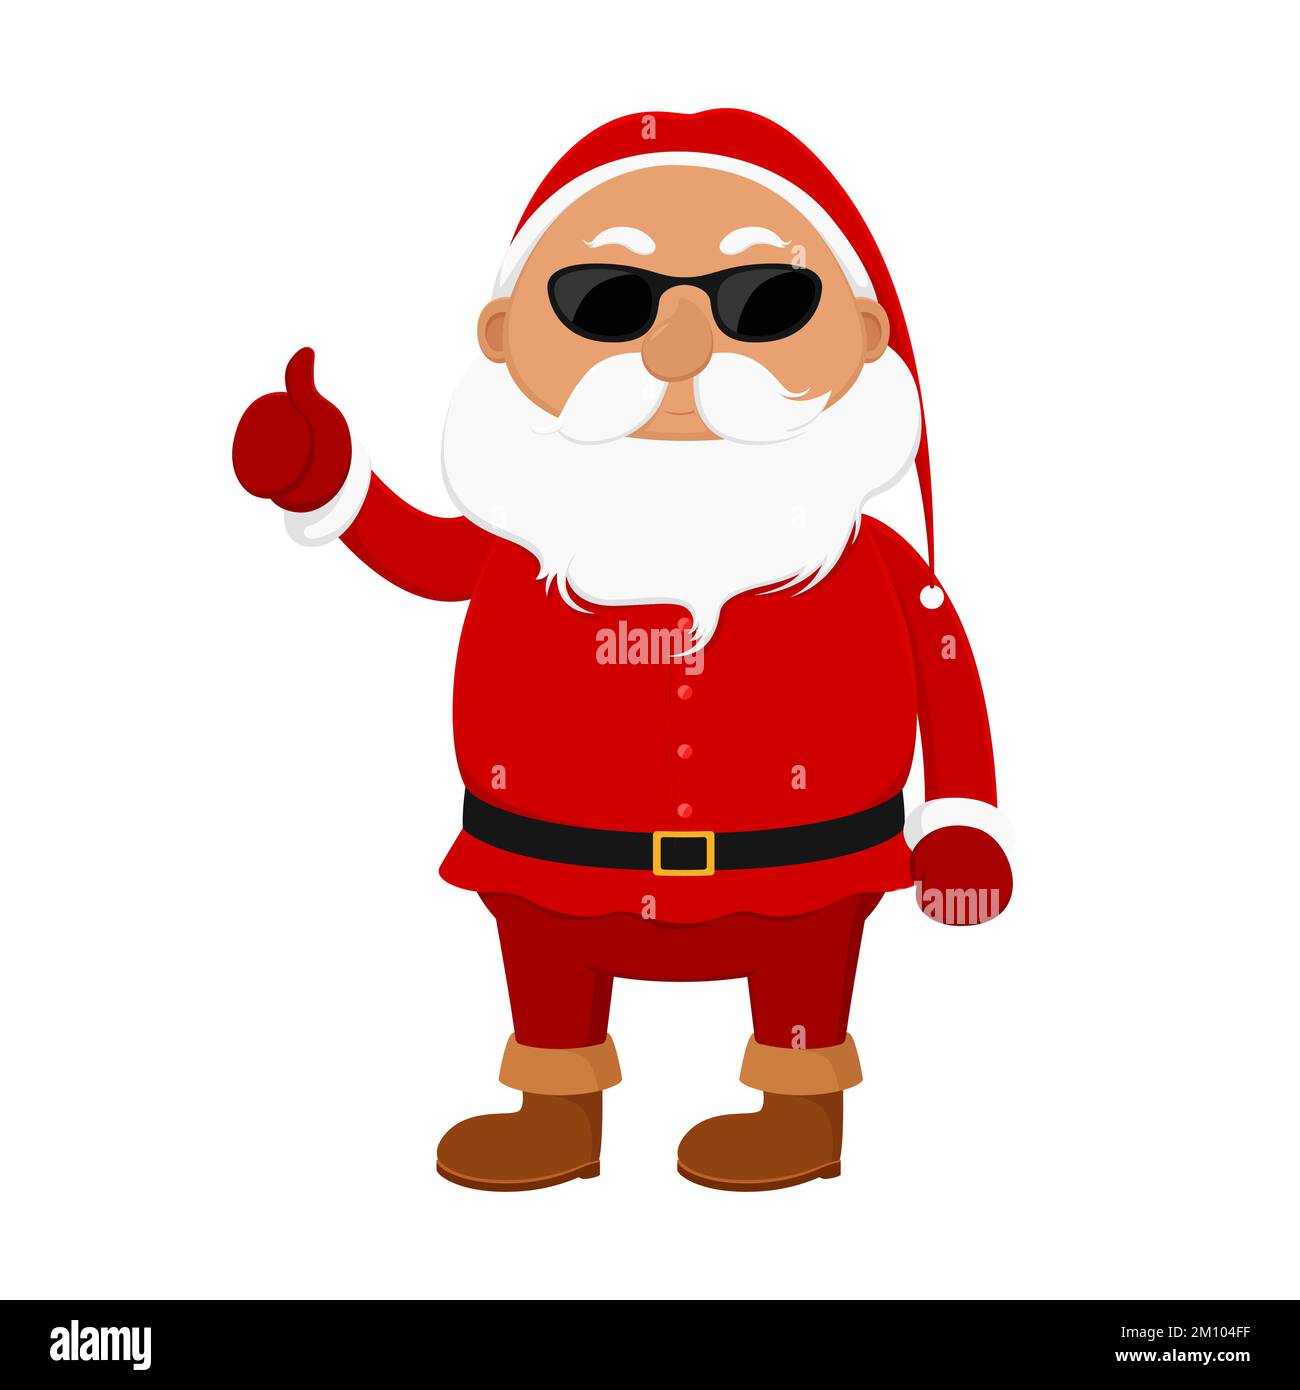 Der Weihnachtsmann mit Sonnenbrille zeigt Daumen hoch. Cartoon-Style. Vektordarstellung. Stock Vektor